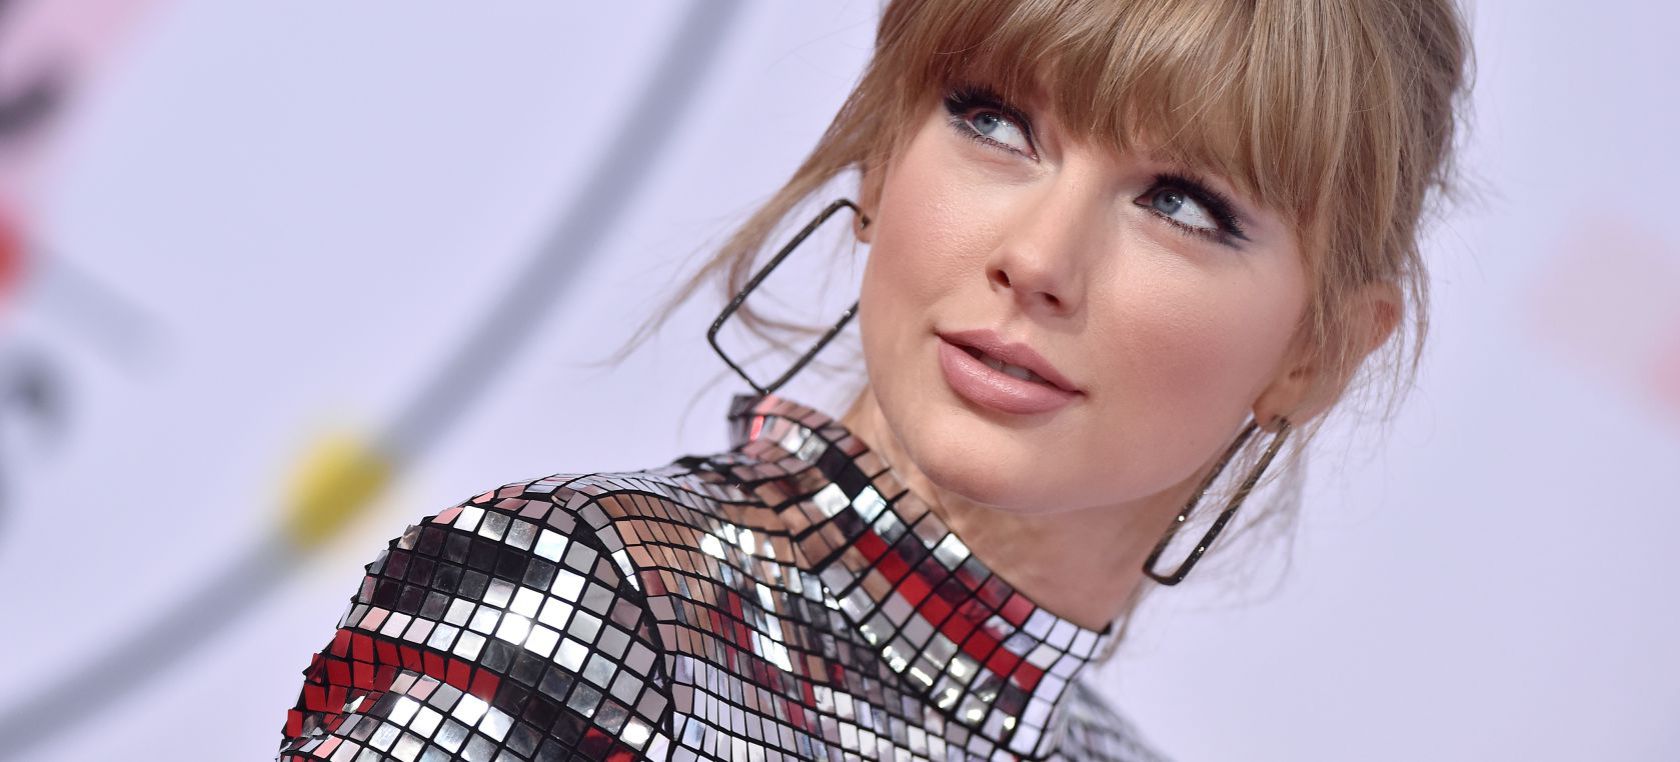 La cantante Taylor Swift confiesa que sufre el síndrome del impostor. ¿En qué consiste este trastorno?